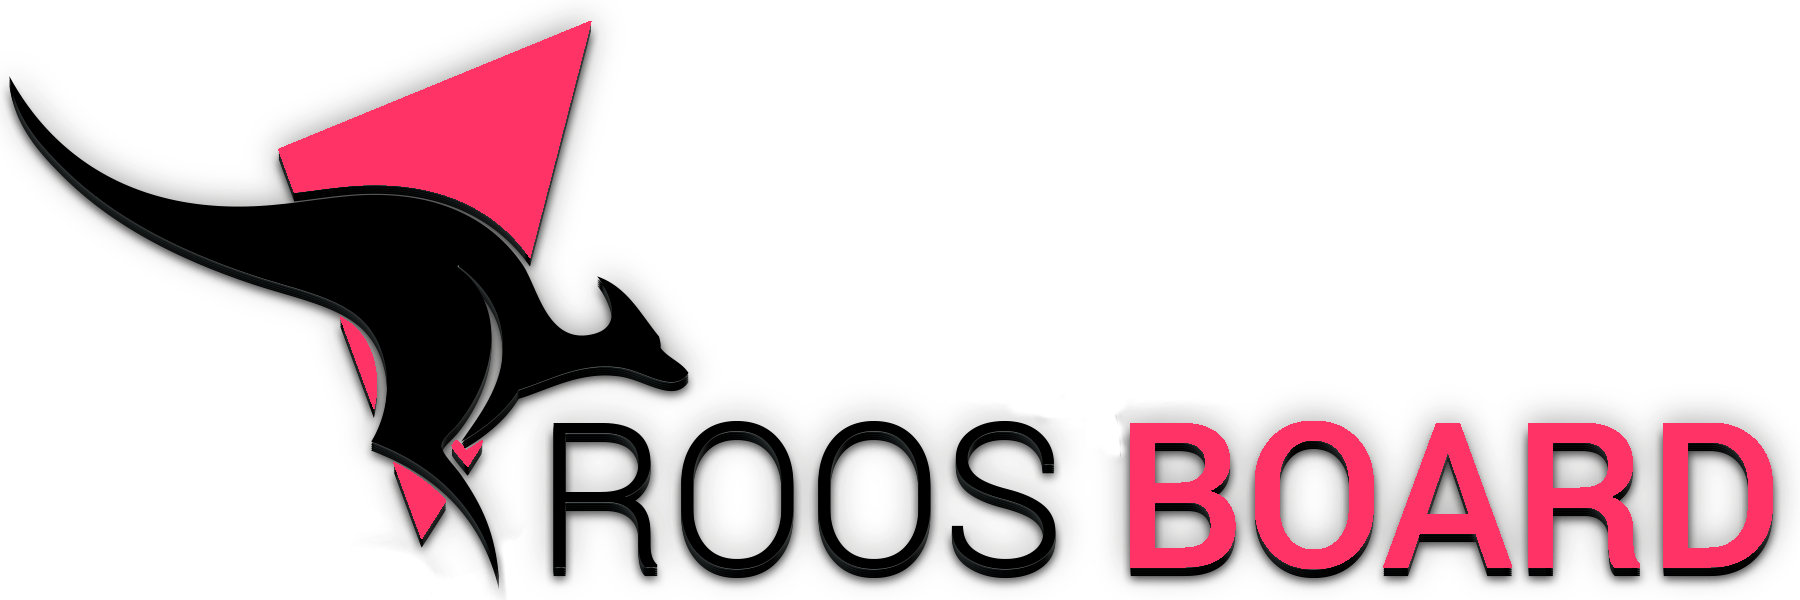 roosboard logo